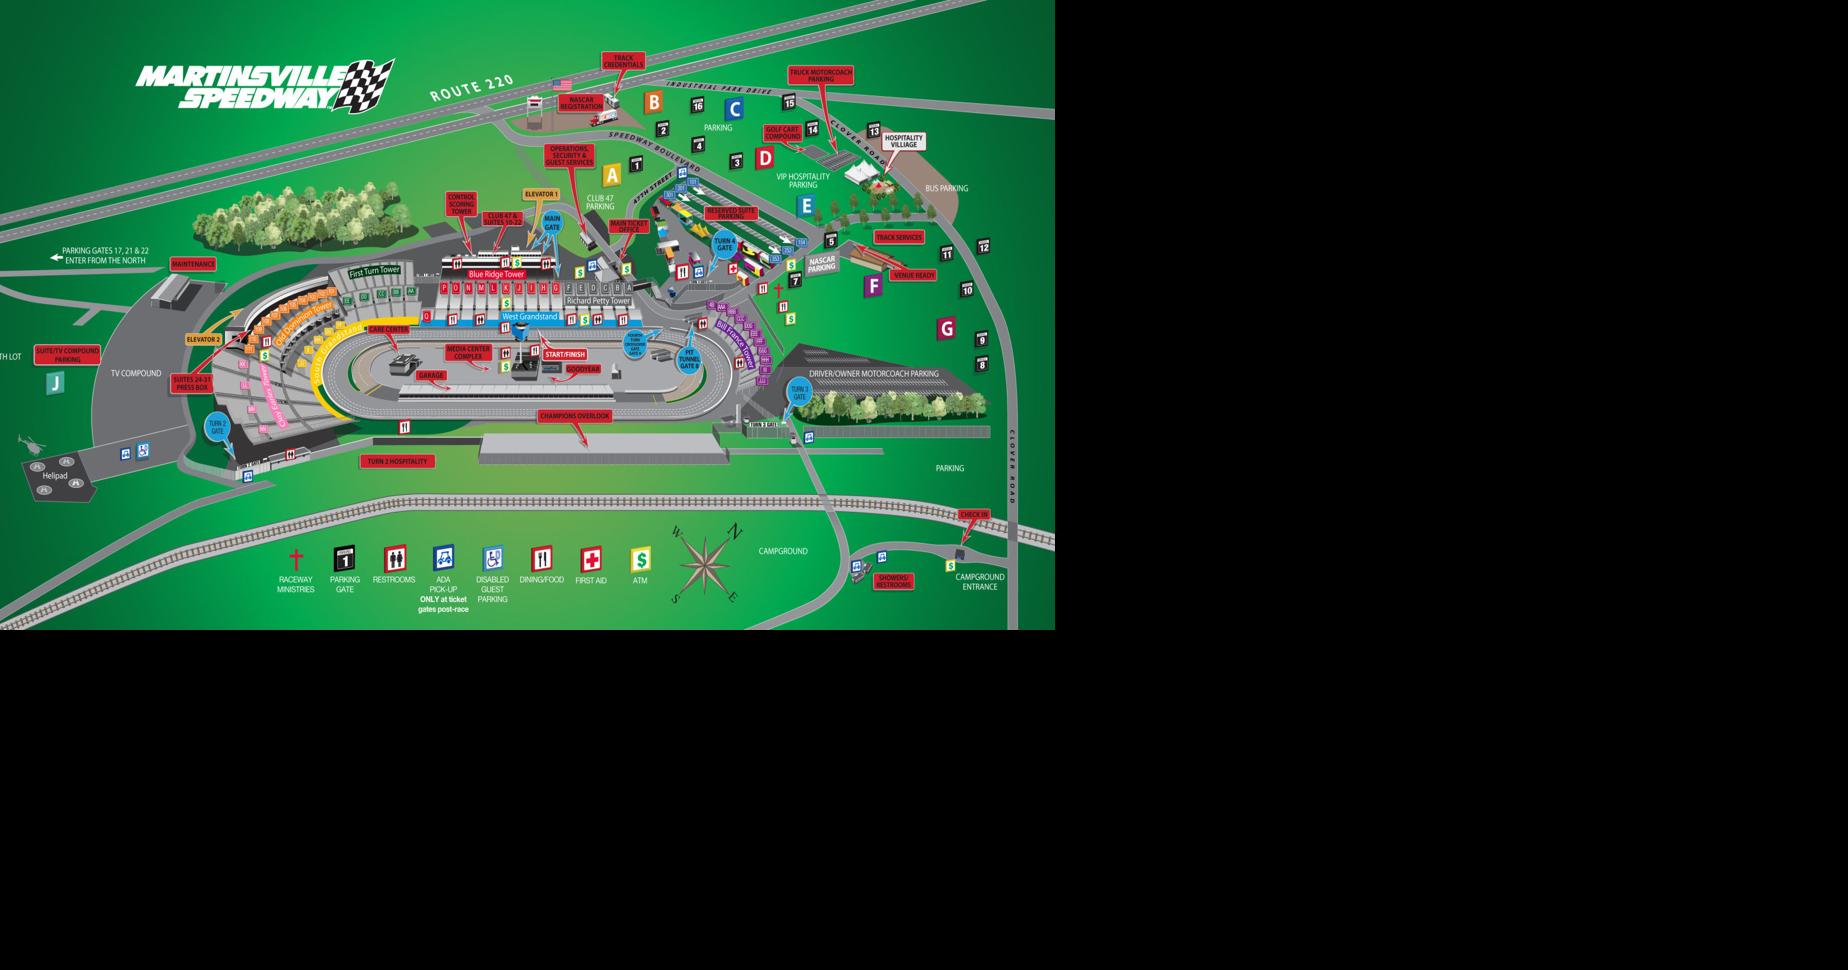 Martinsville Speedway Schedules and maps